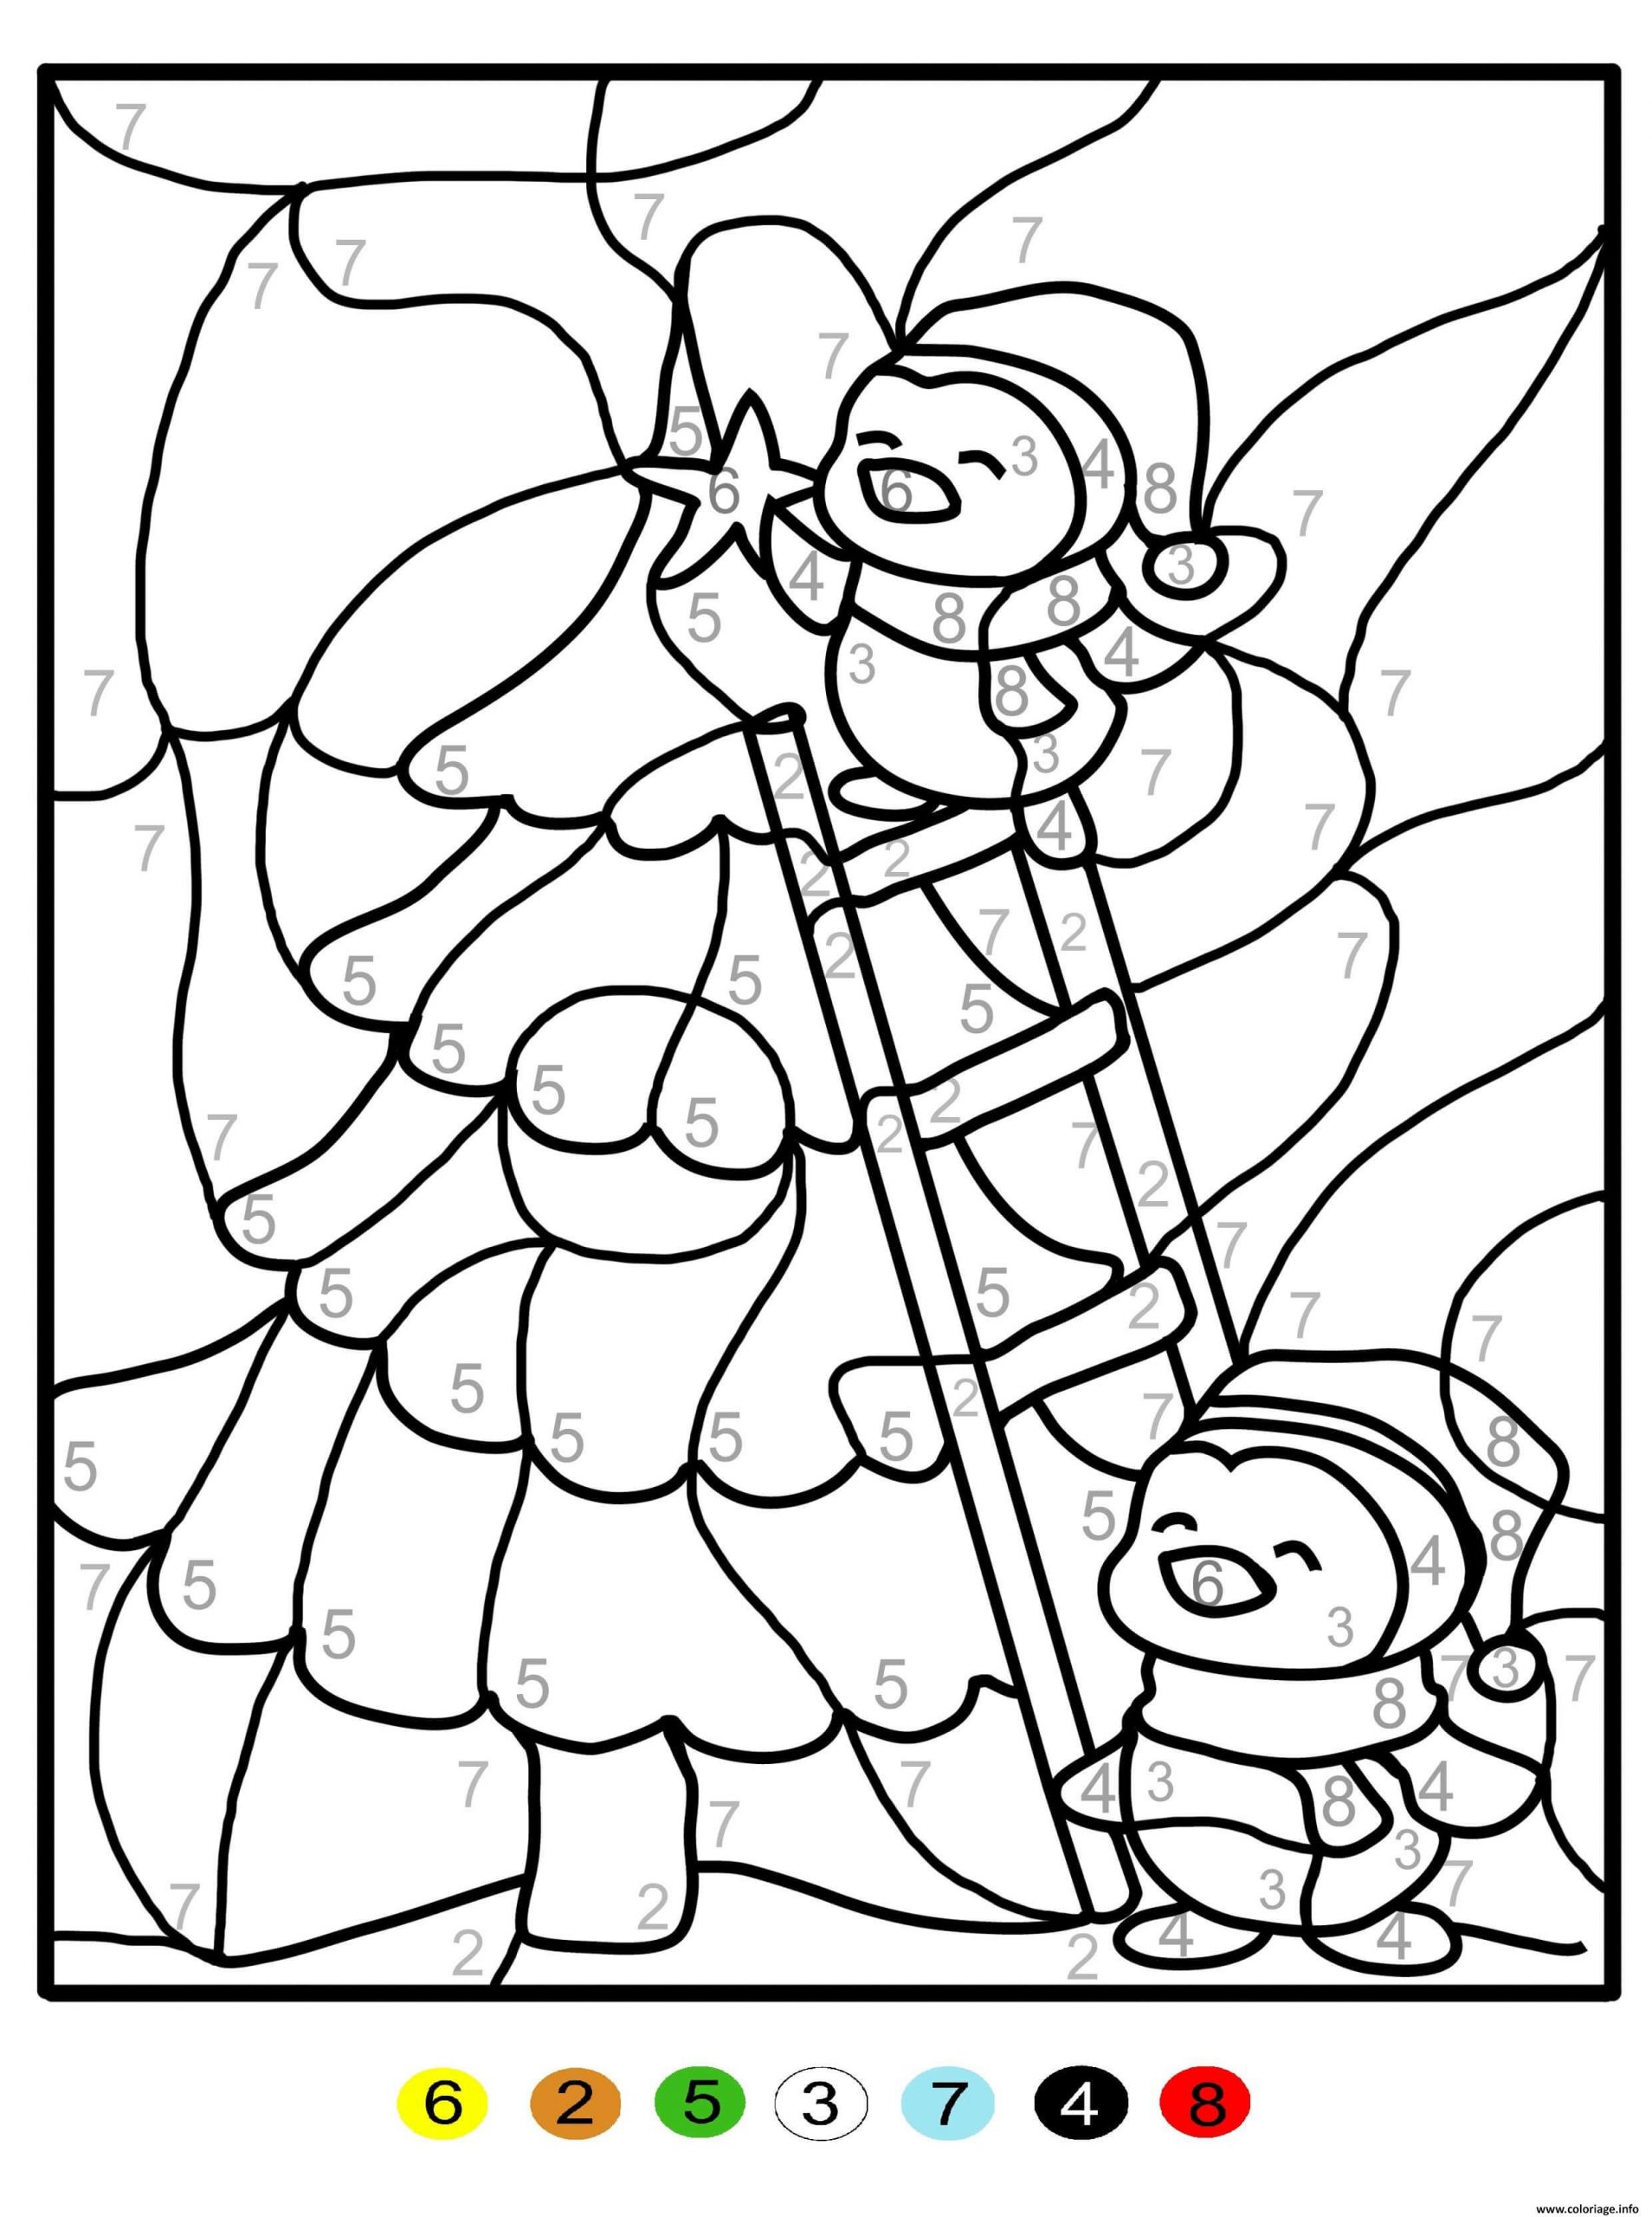 Coloriage Magique Sapin De Noel Chiffre Numero Maternelle Dessin destiné Coloriage Sapin De Noel Gratuit A Imprimer 